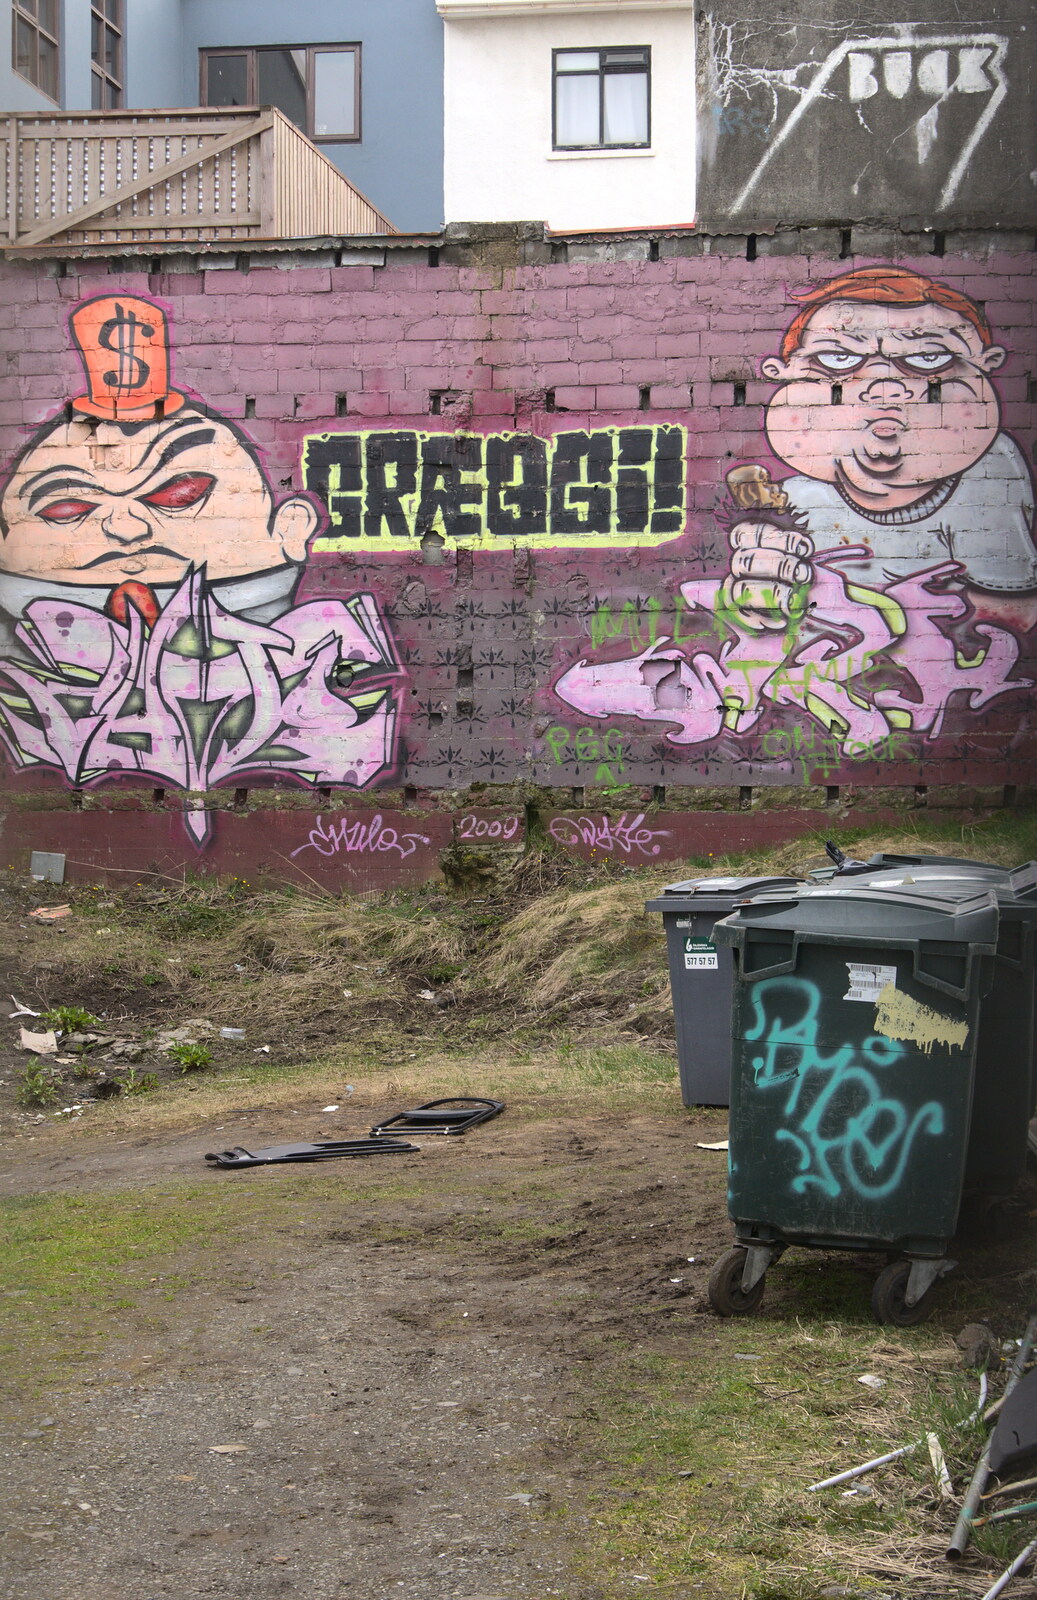 More art/graffiti from Stríðsminjar War Relics, Perlan and Street Art, Reykjavik, Iceland - 23rd April 2017